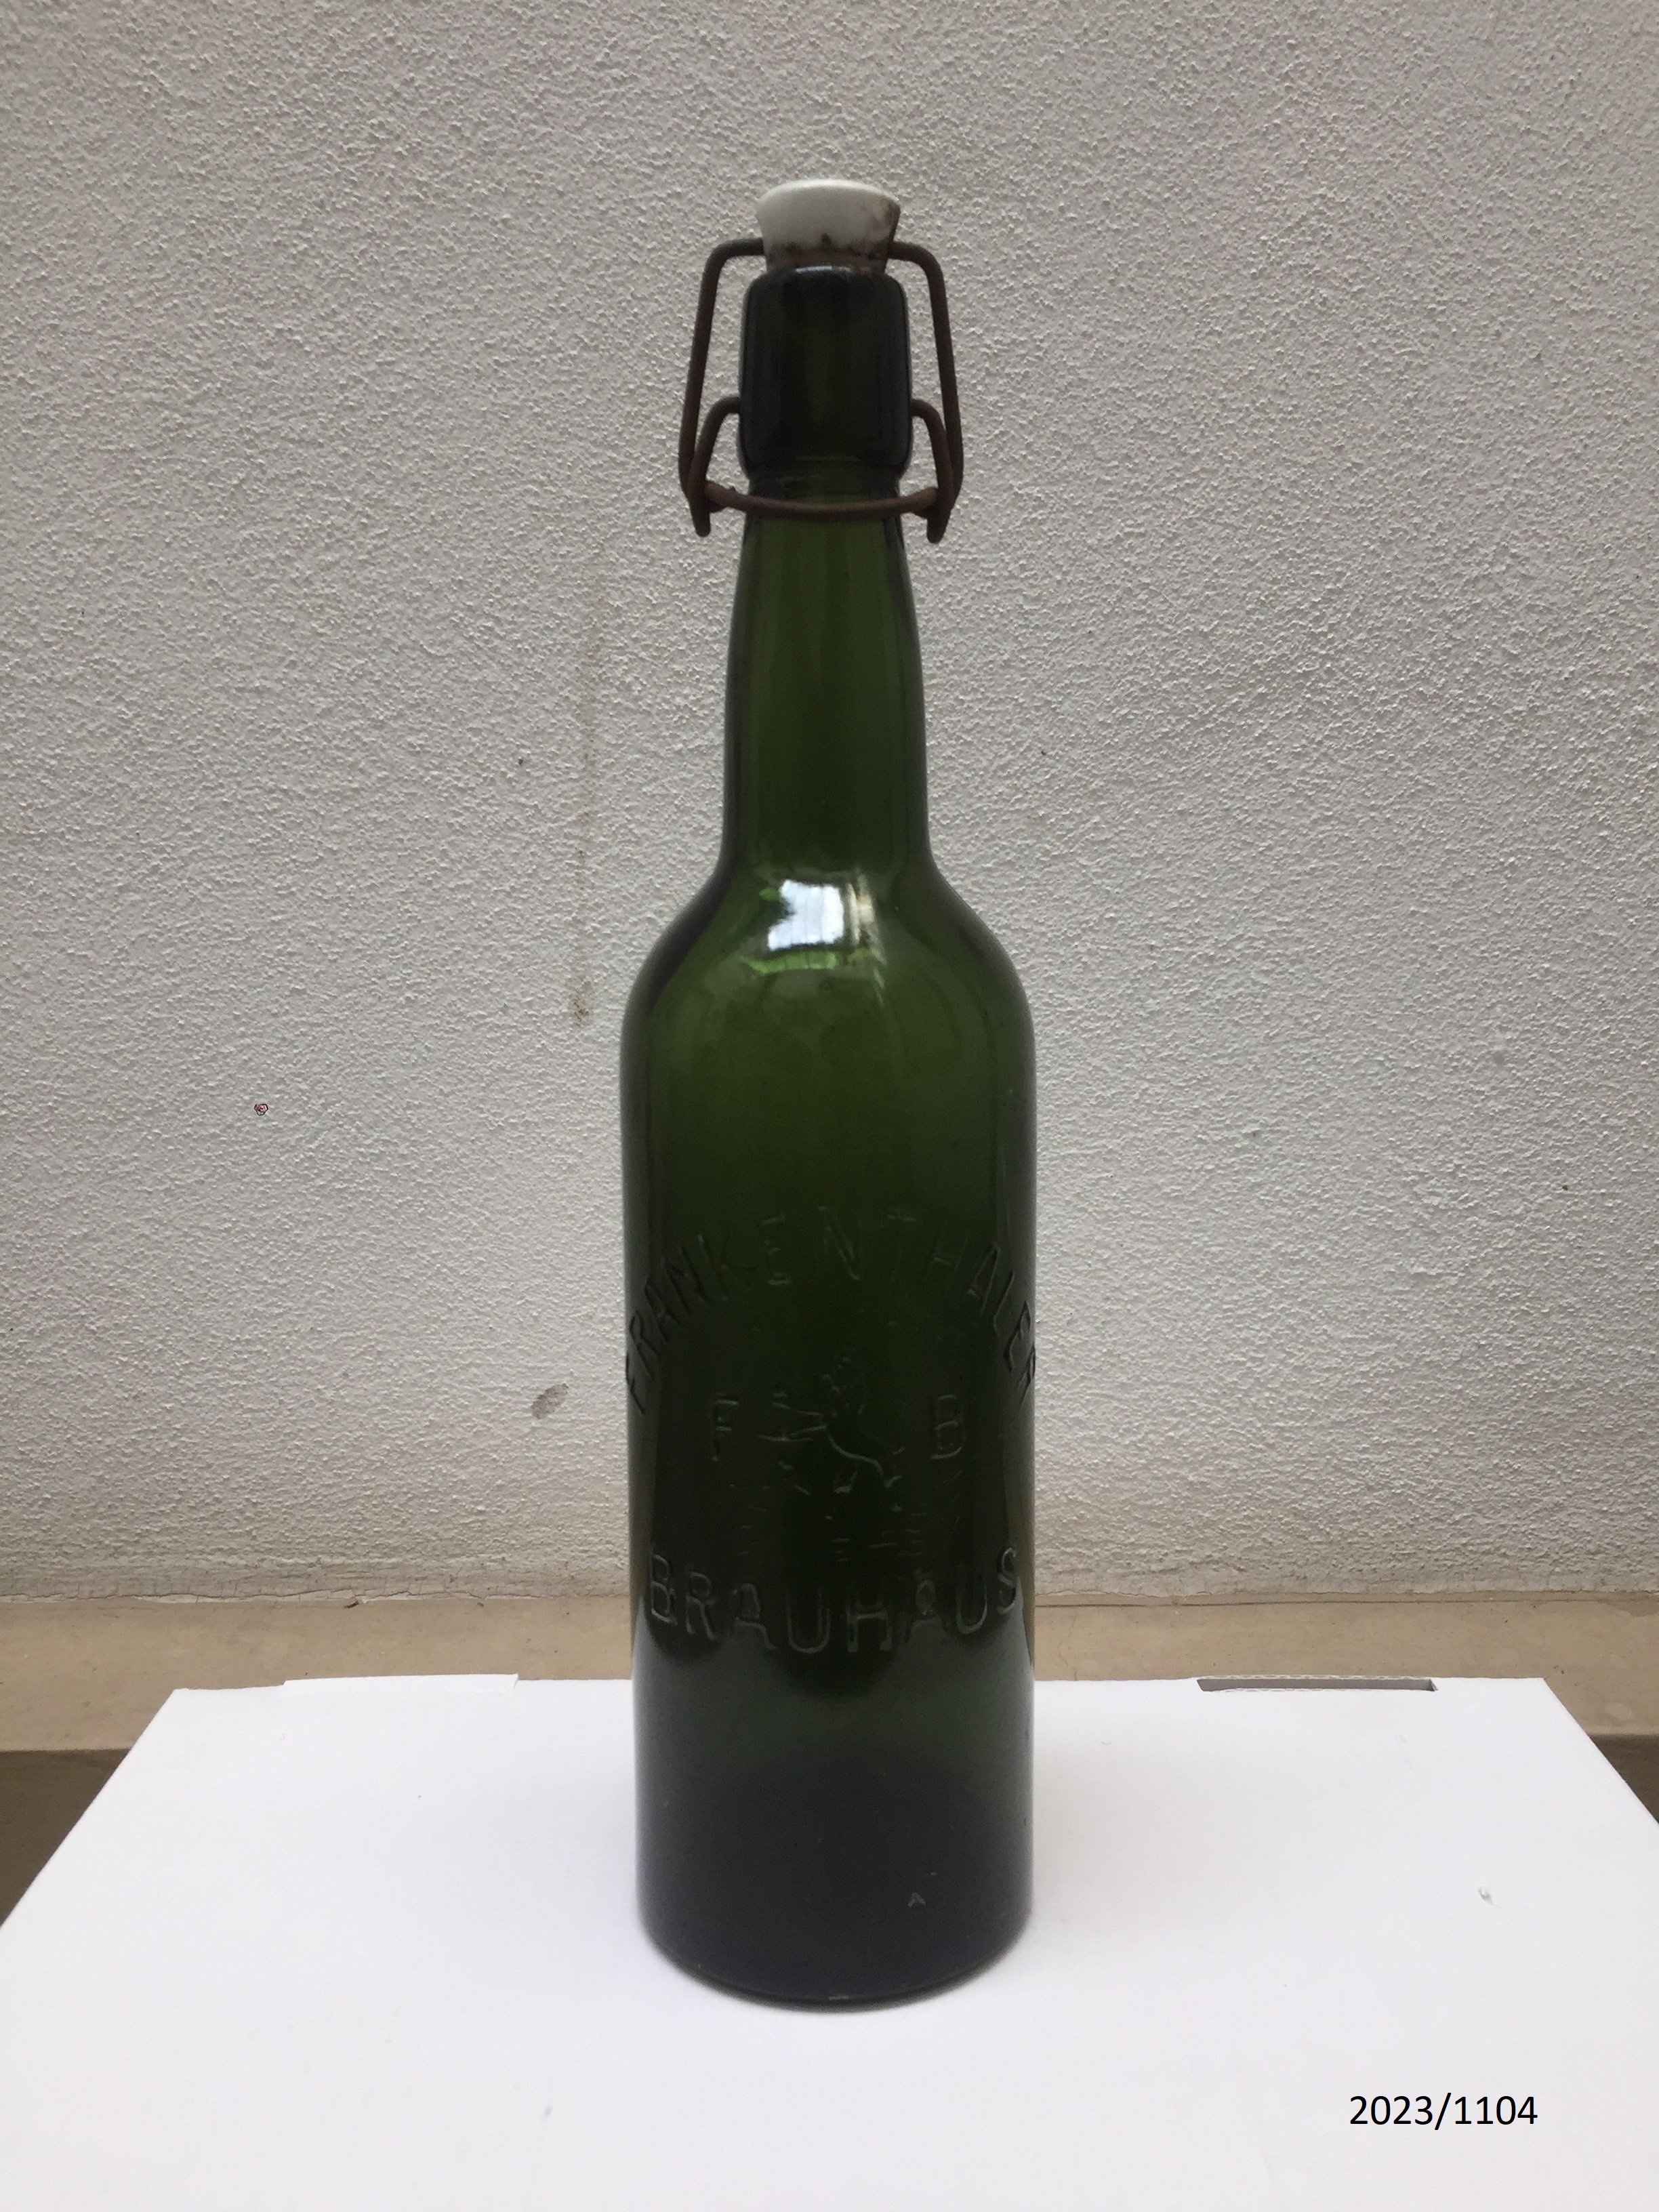 Bierflasche "Frankenthaler Brauhaus" 1 Liter (Stadtmuseum Bad Dürkheim im Kulturzentrum Haus Catoir CC BY-NC-SA)